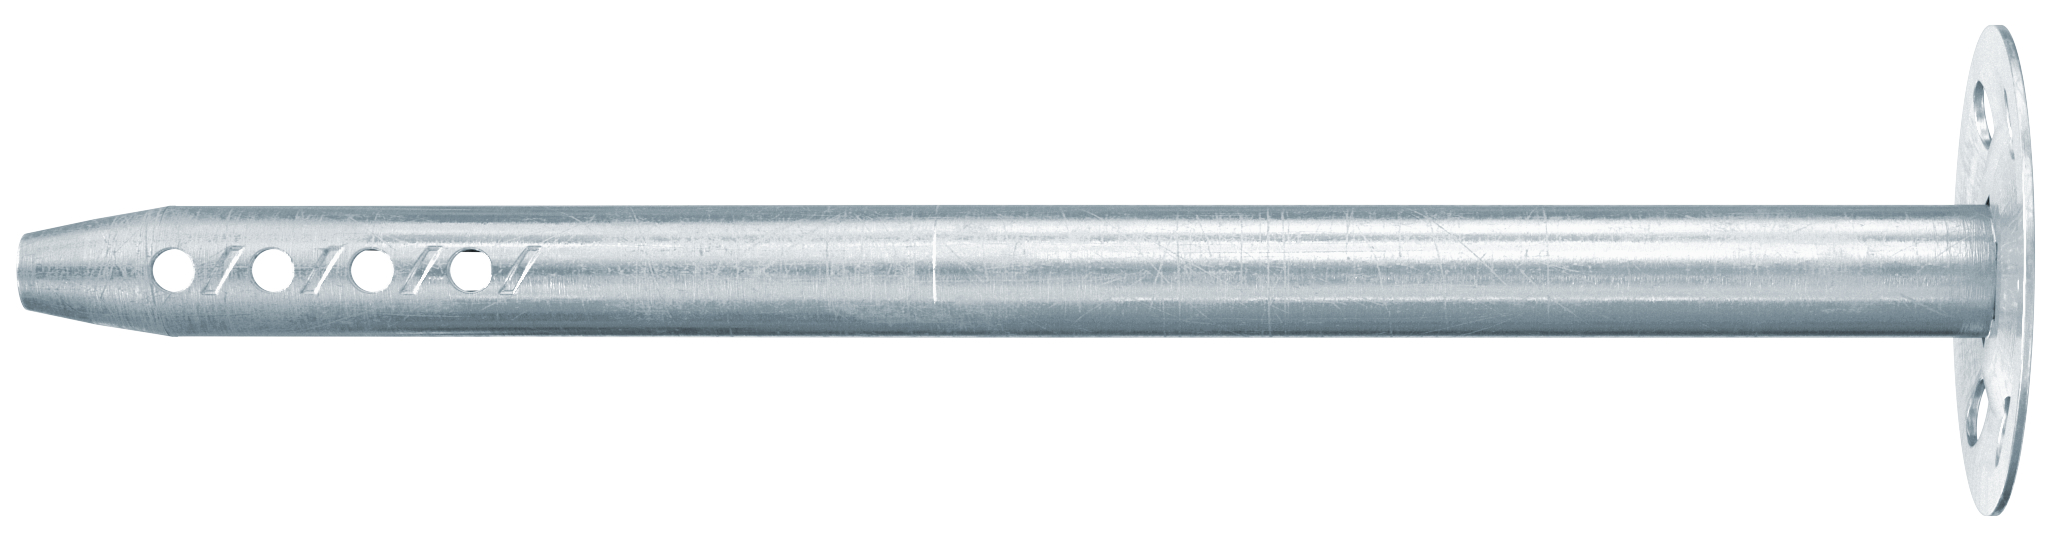 fischer Ancoraggio metallico per cappotti DHM 100 (1 Pz.) L'ancoraggio metallico testato per pannelli isolanti resistenti al fuoco.